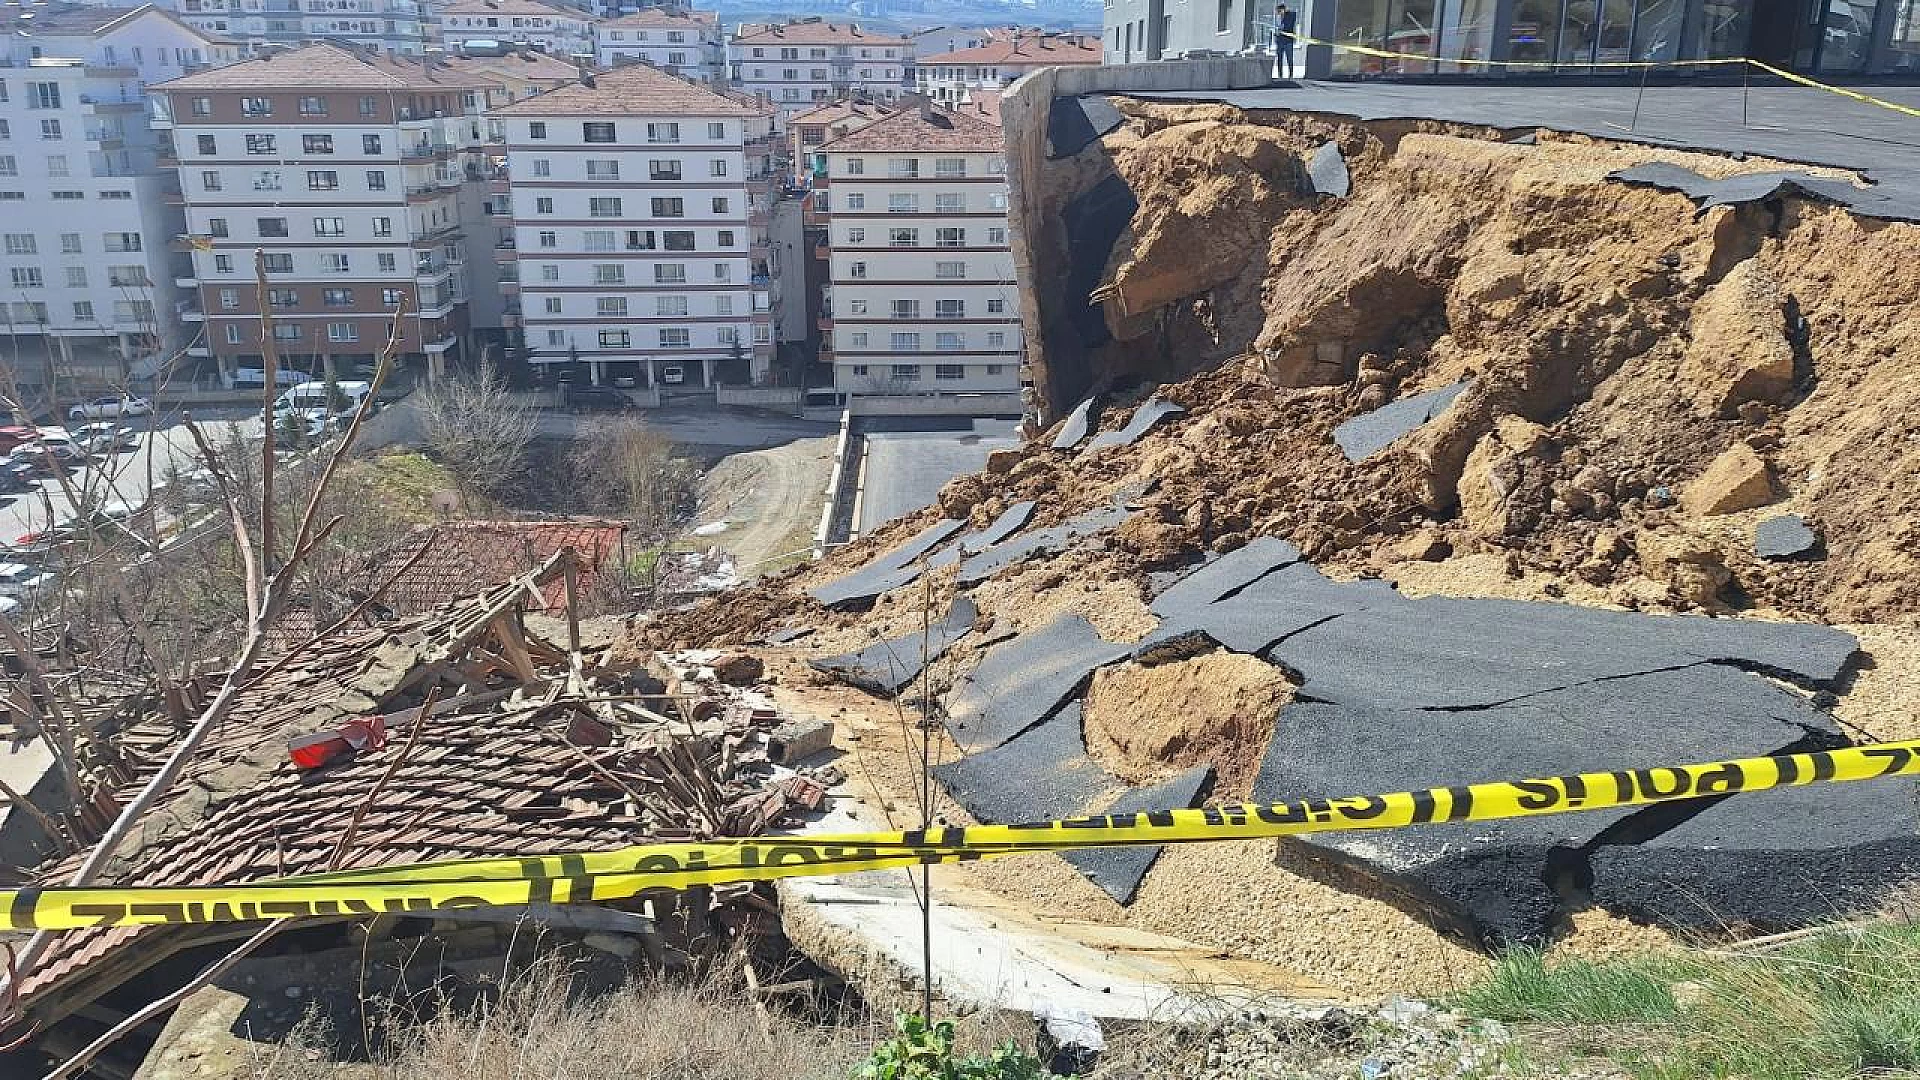 Ankara'da istinat duvarı çöktü